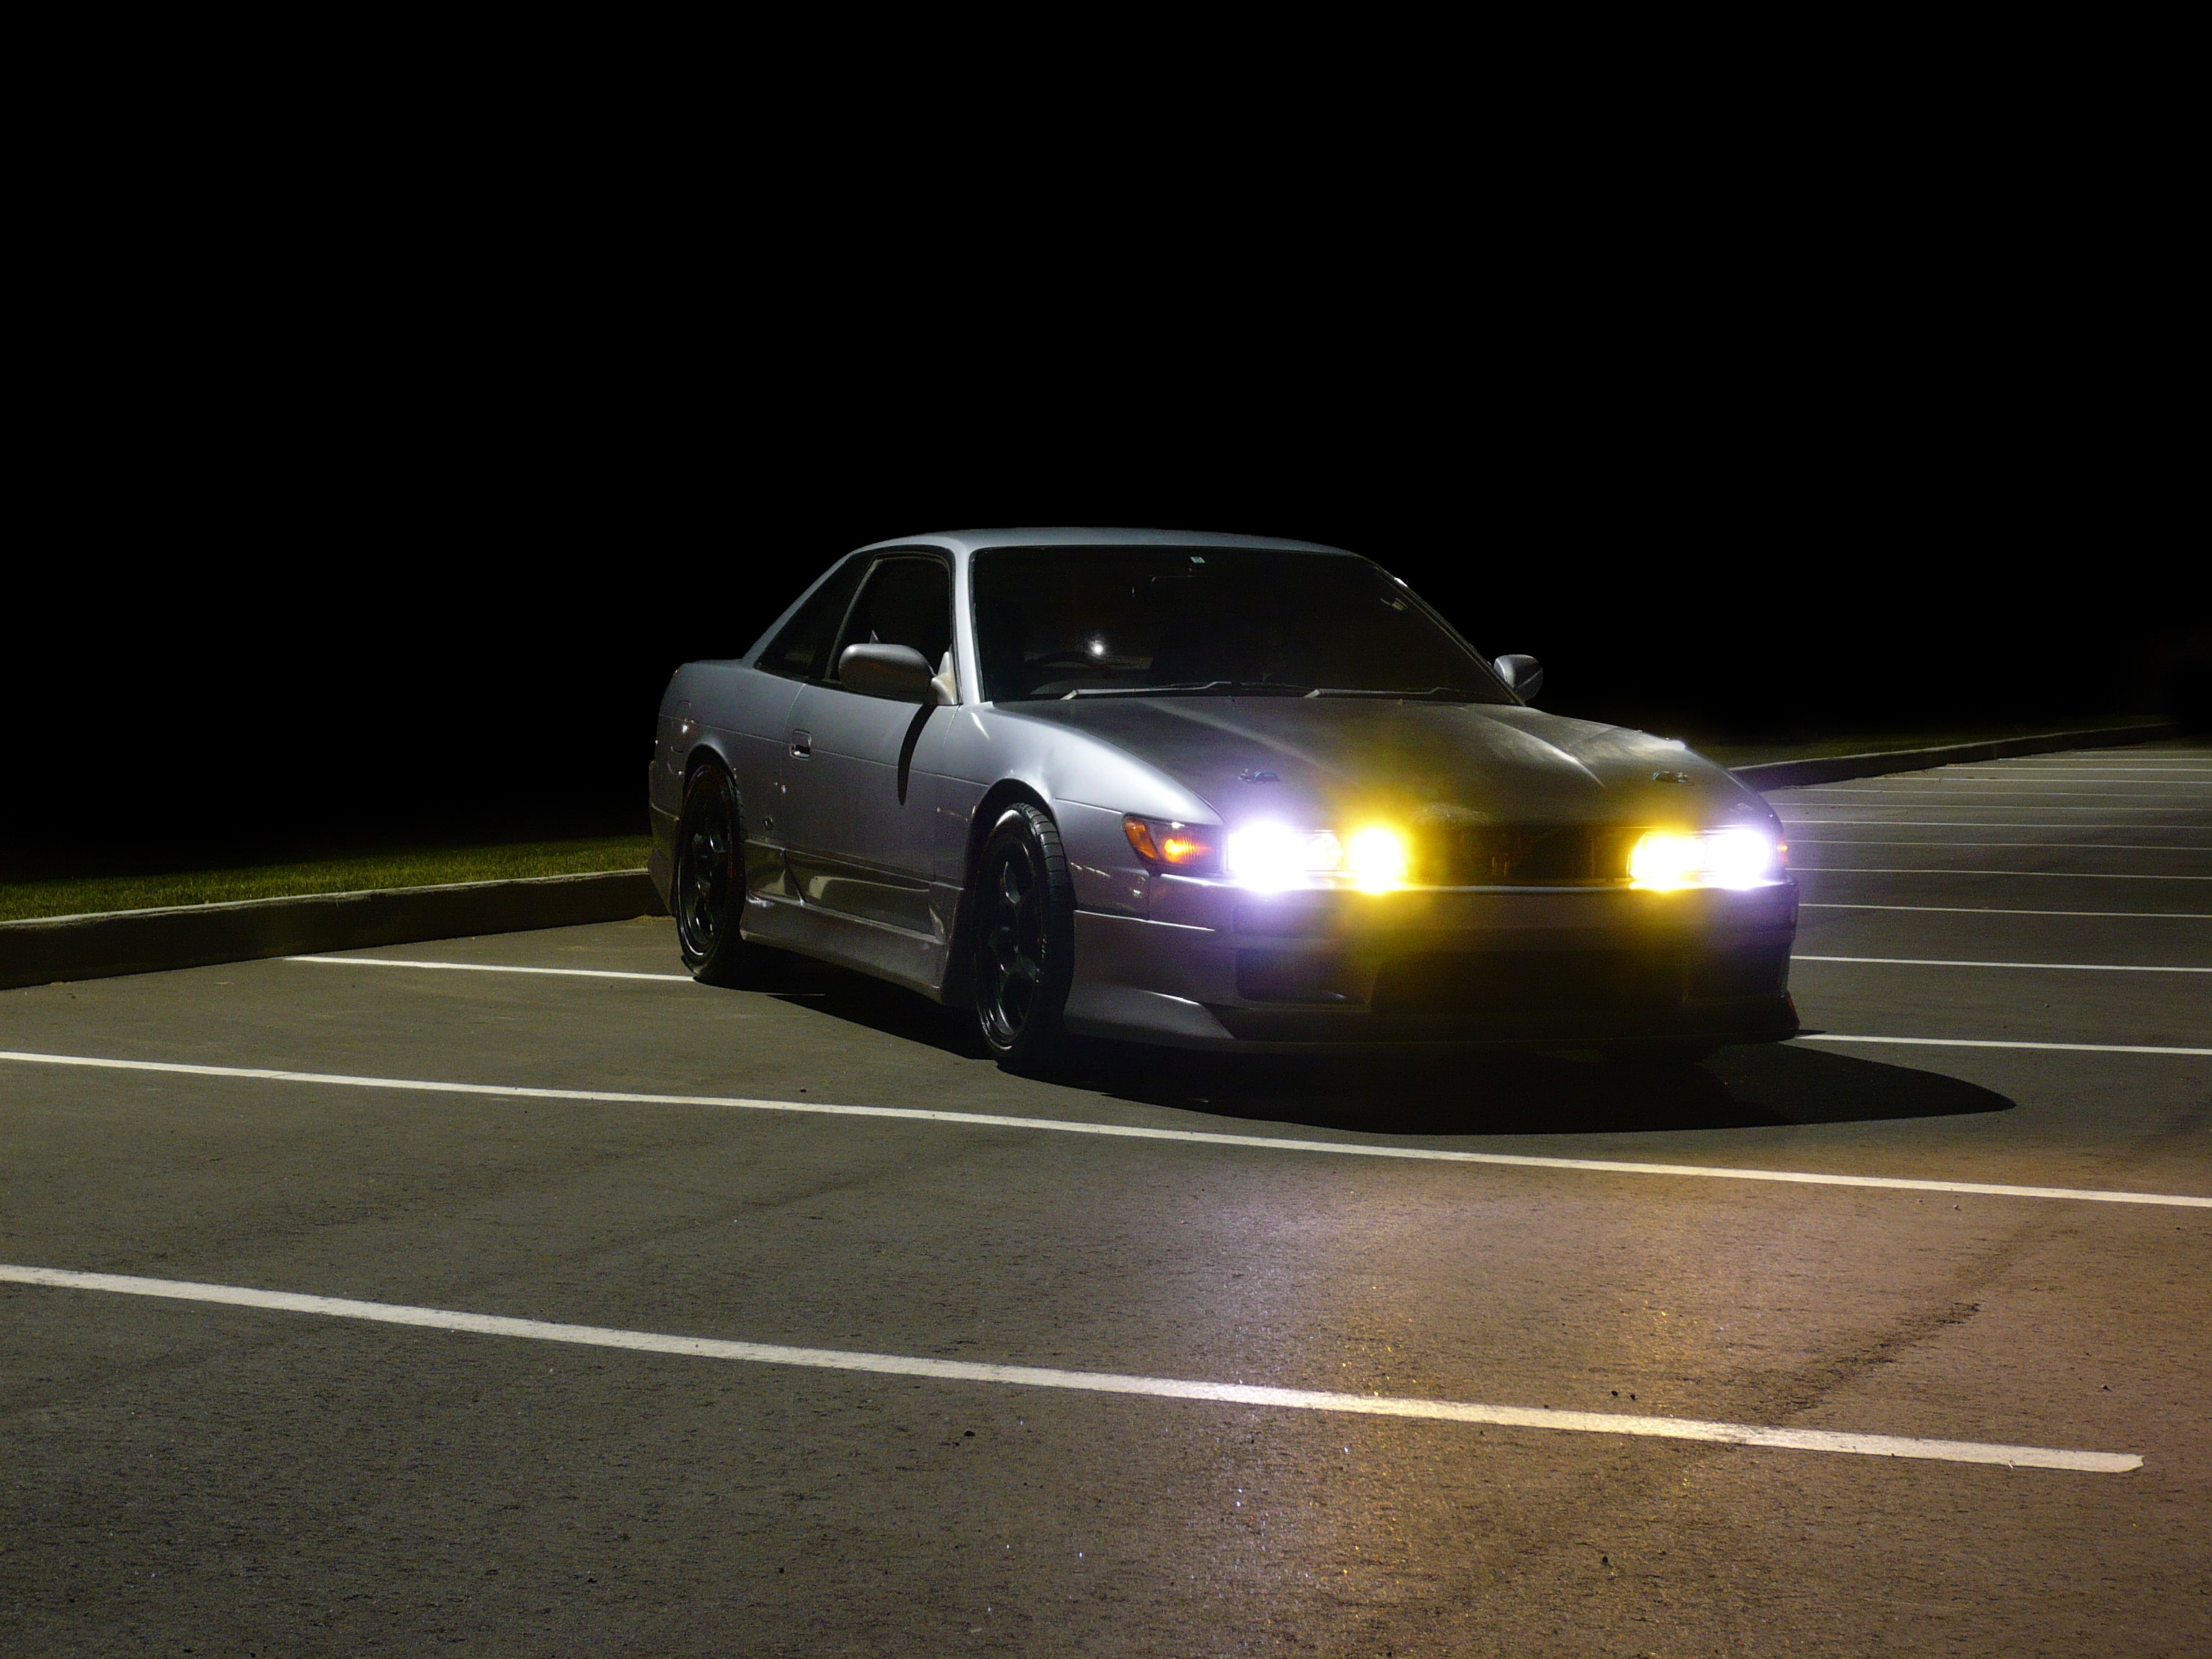 1 13 ночи. Nissan Silvia s13 дрифт ночь. Nissan Silvia s14 ночью. Nissan 180sx ночью. Nissan Silvia 14 ночь.